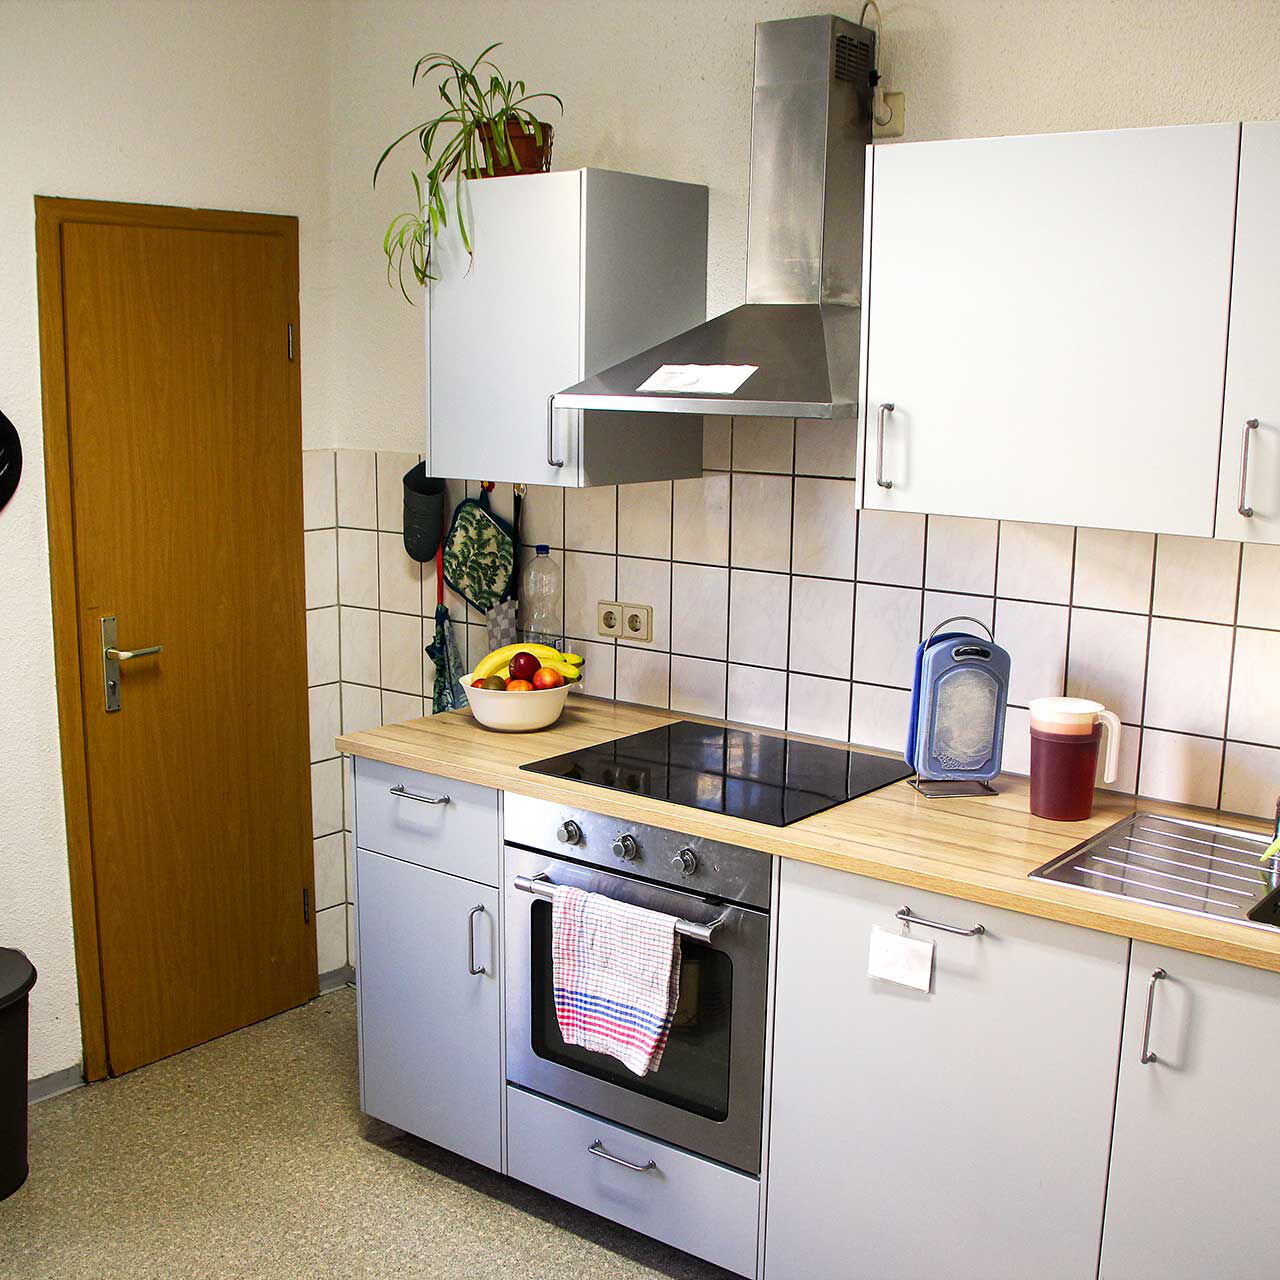 Eine Küche mit einer kleinen Küchenzeile und Elektrogeräten.